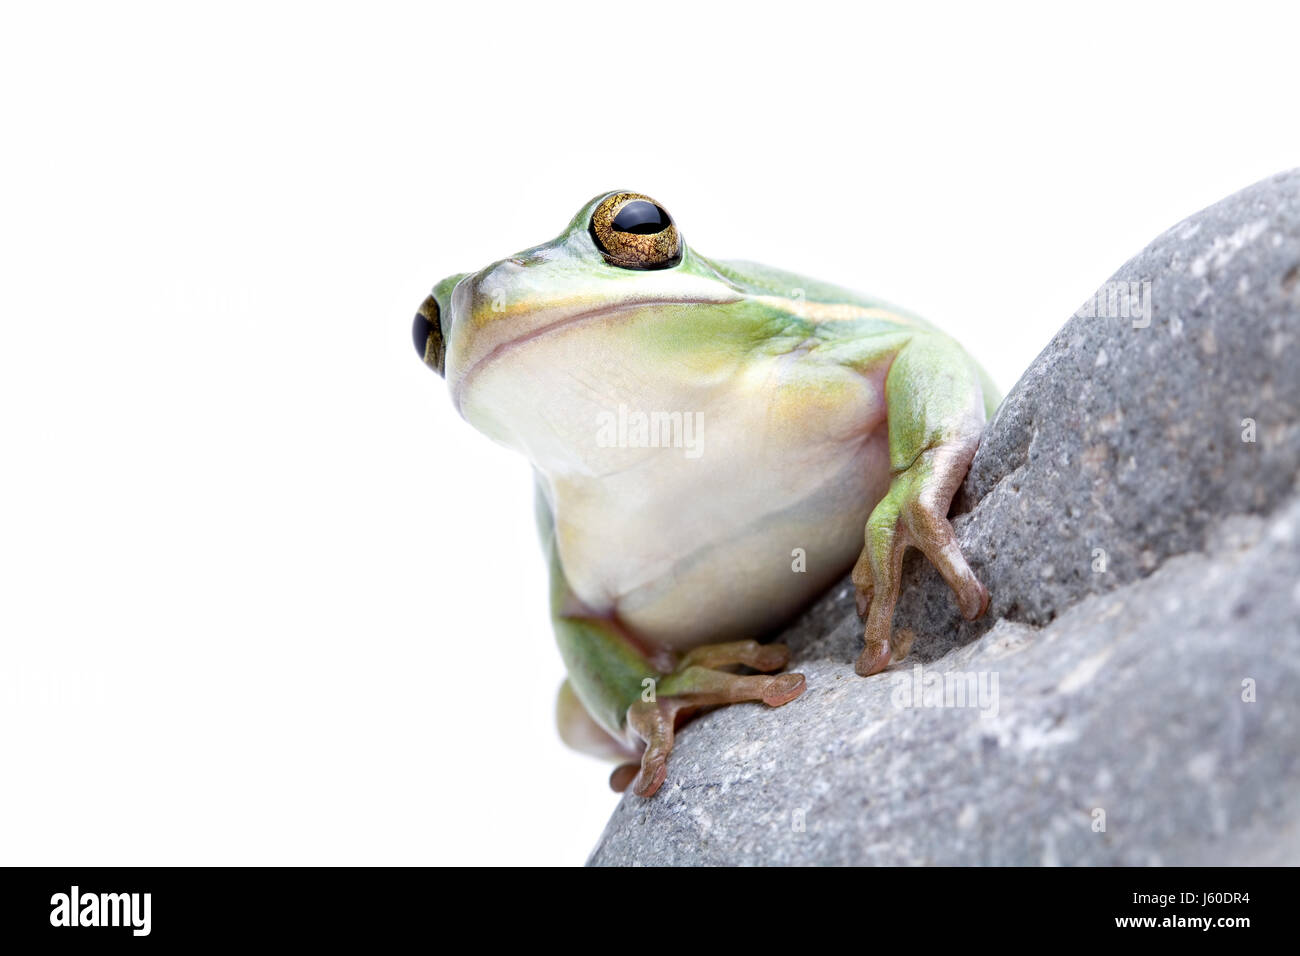 isolierten tierischen Amphibien Frosch Tierwelt Rasen Grün Natur Makro Nahaufnahme Makro Stockfoto